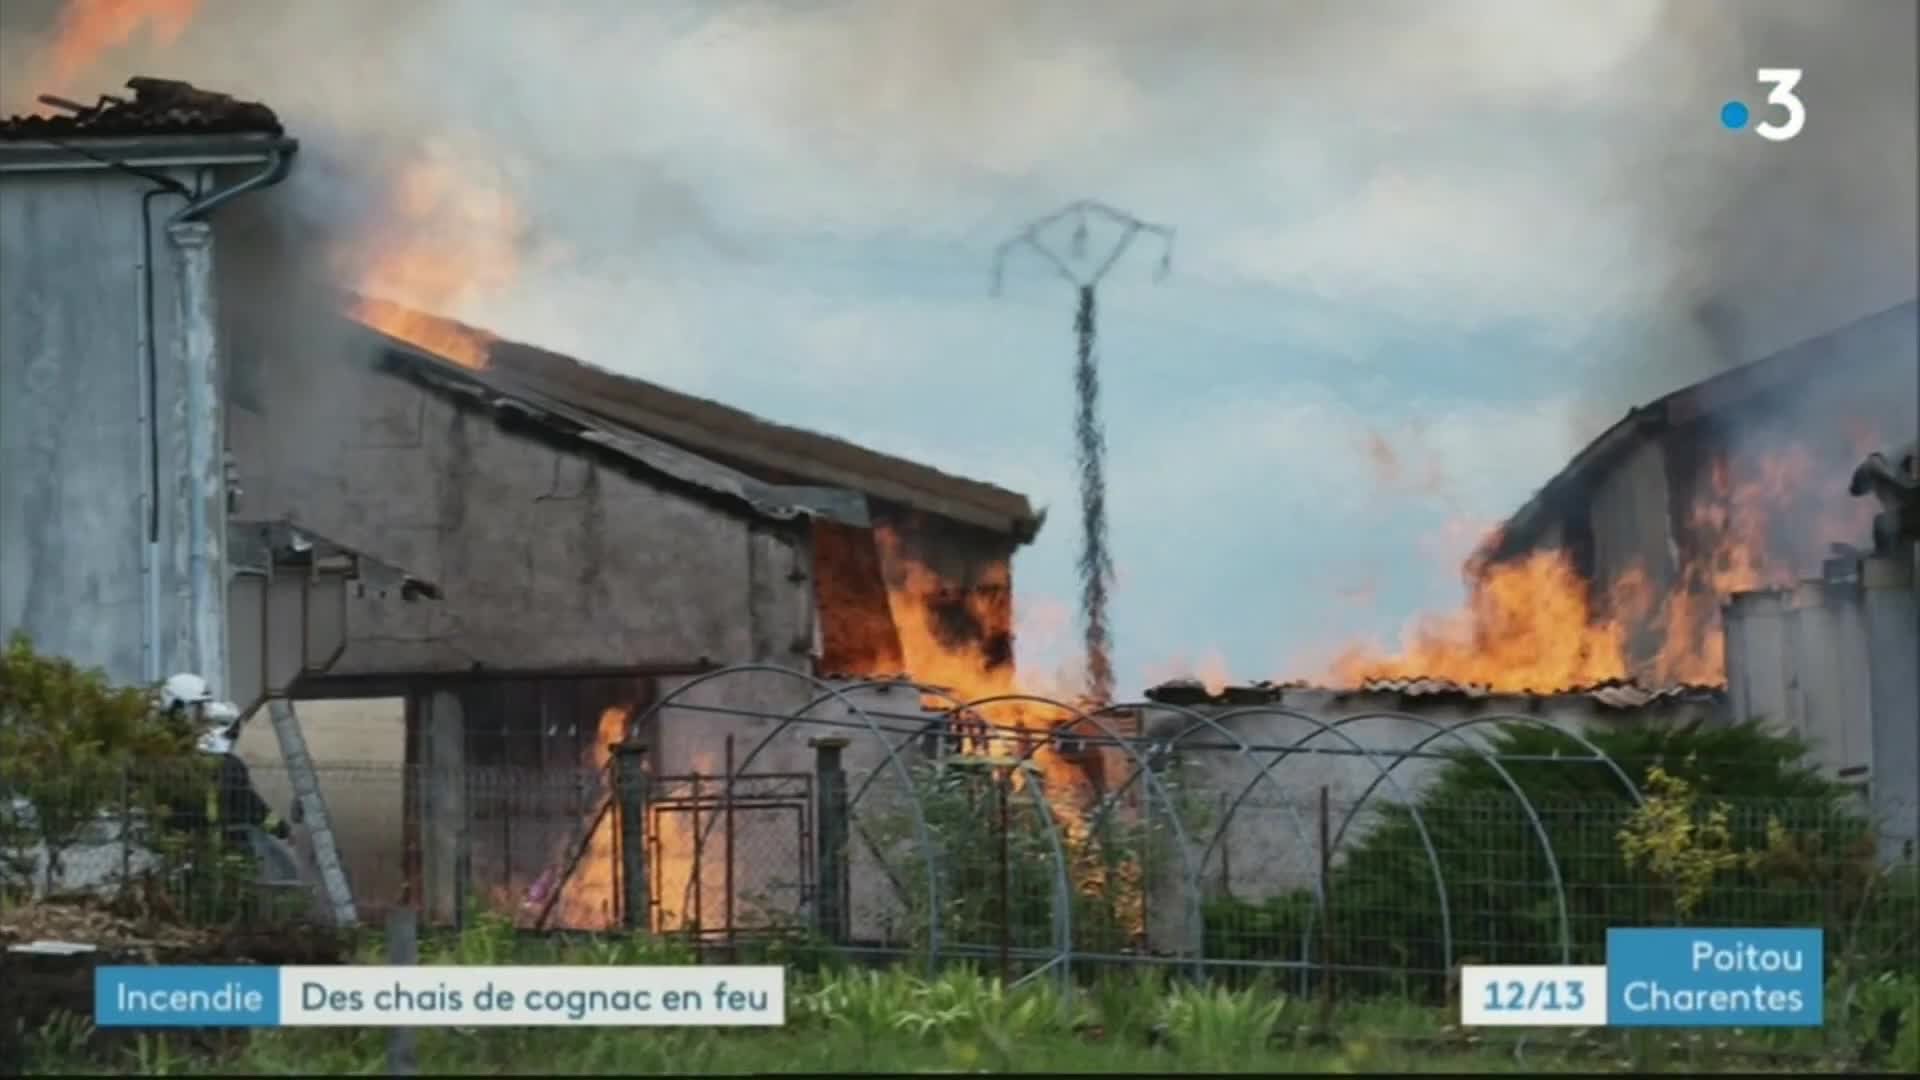 12/13 - F3 Poitou-Charentes ,incendie de panneaux photovoltaïques